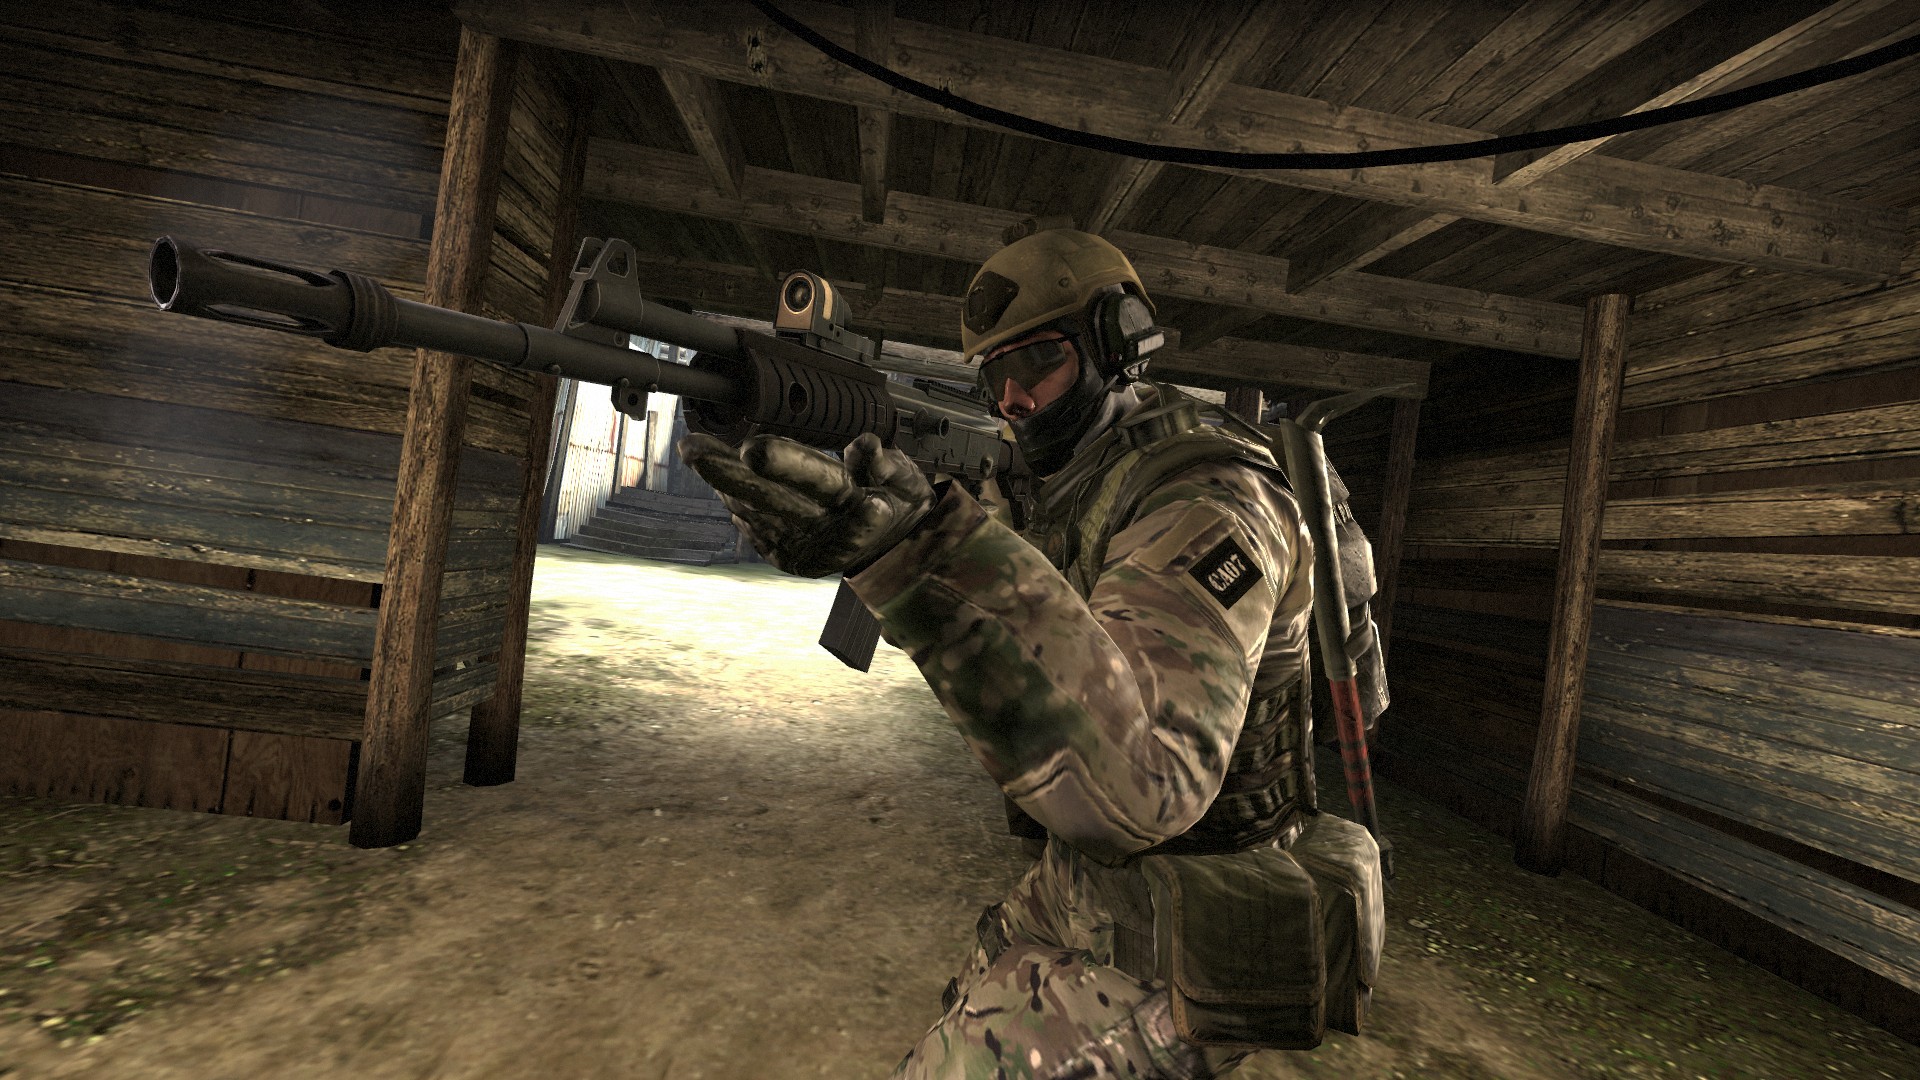 Counter-Strike 2 deve ganhar beta com Source 2, apontam rumores